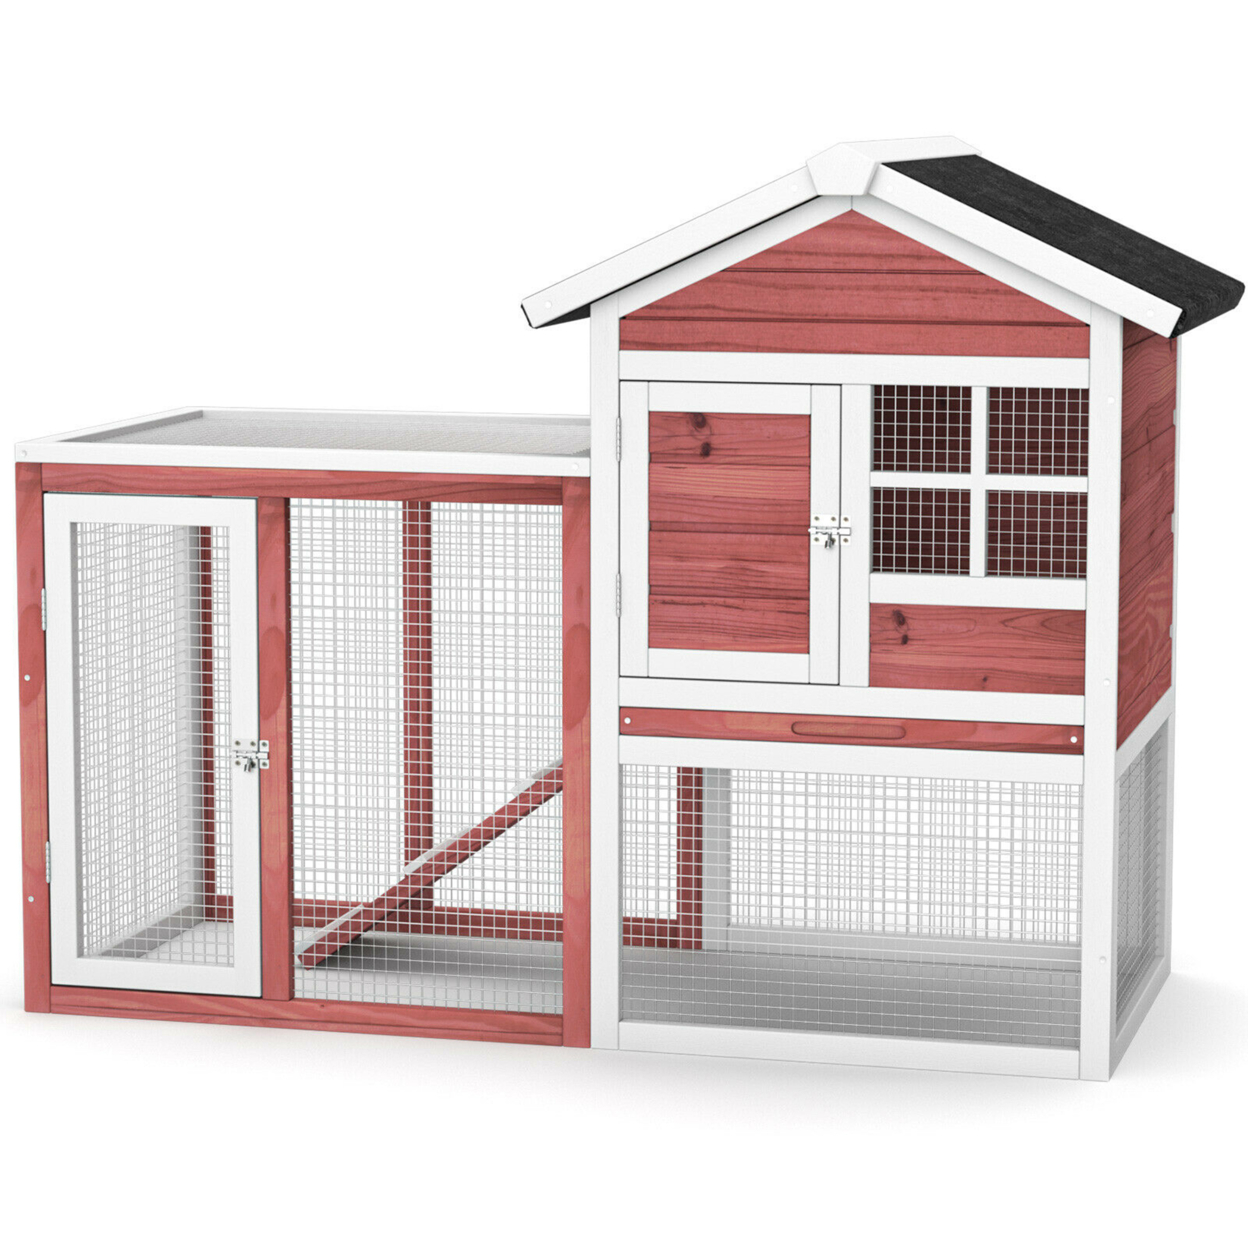 Wooden Chicken Coop Outdoor & Indoor Small Rabbit Hutch W/ Run - Natural